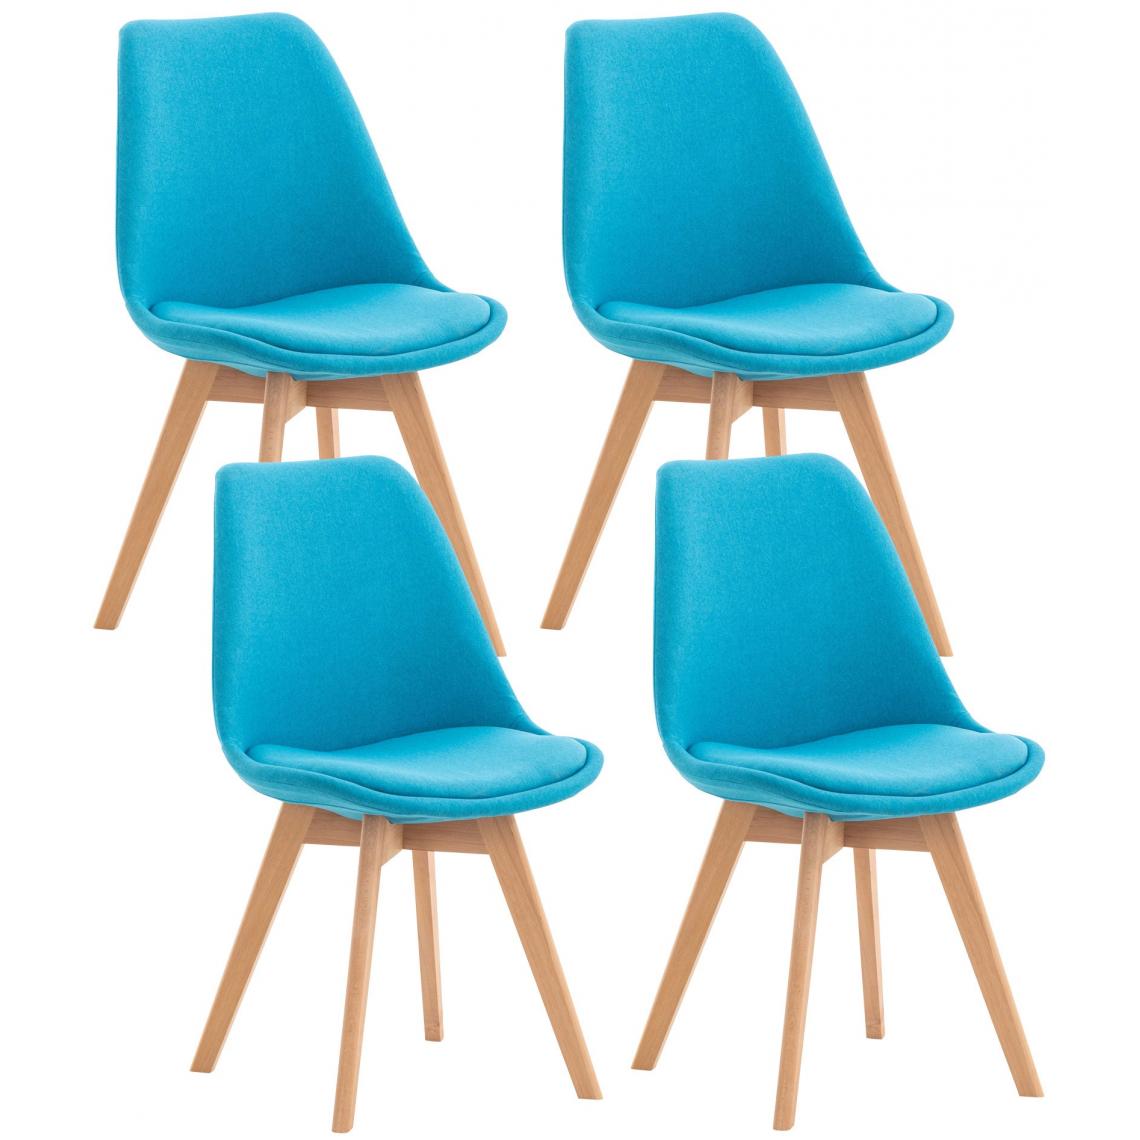 Decoshop26 - Lot de 4 chaises de salle à manger cuisine bureau style scandinave en tissu bleu turquoise pieds en bois CDS10086 - Chaises